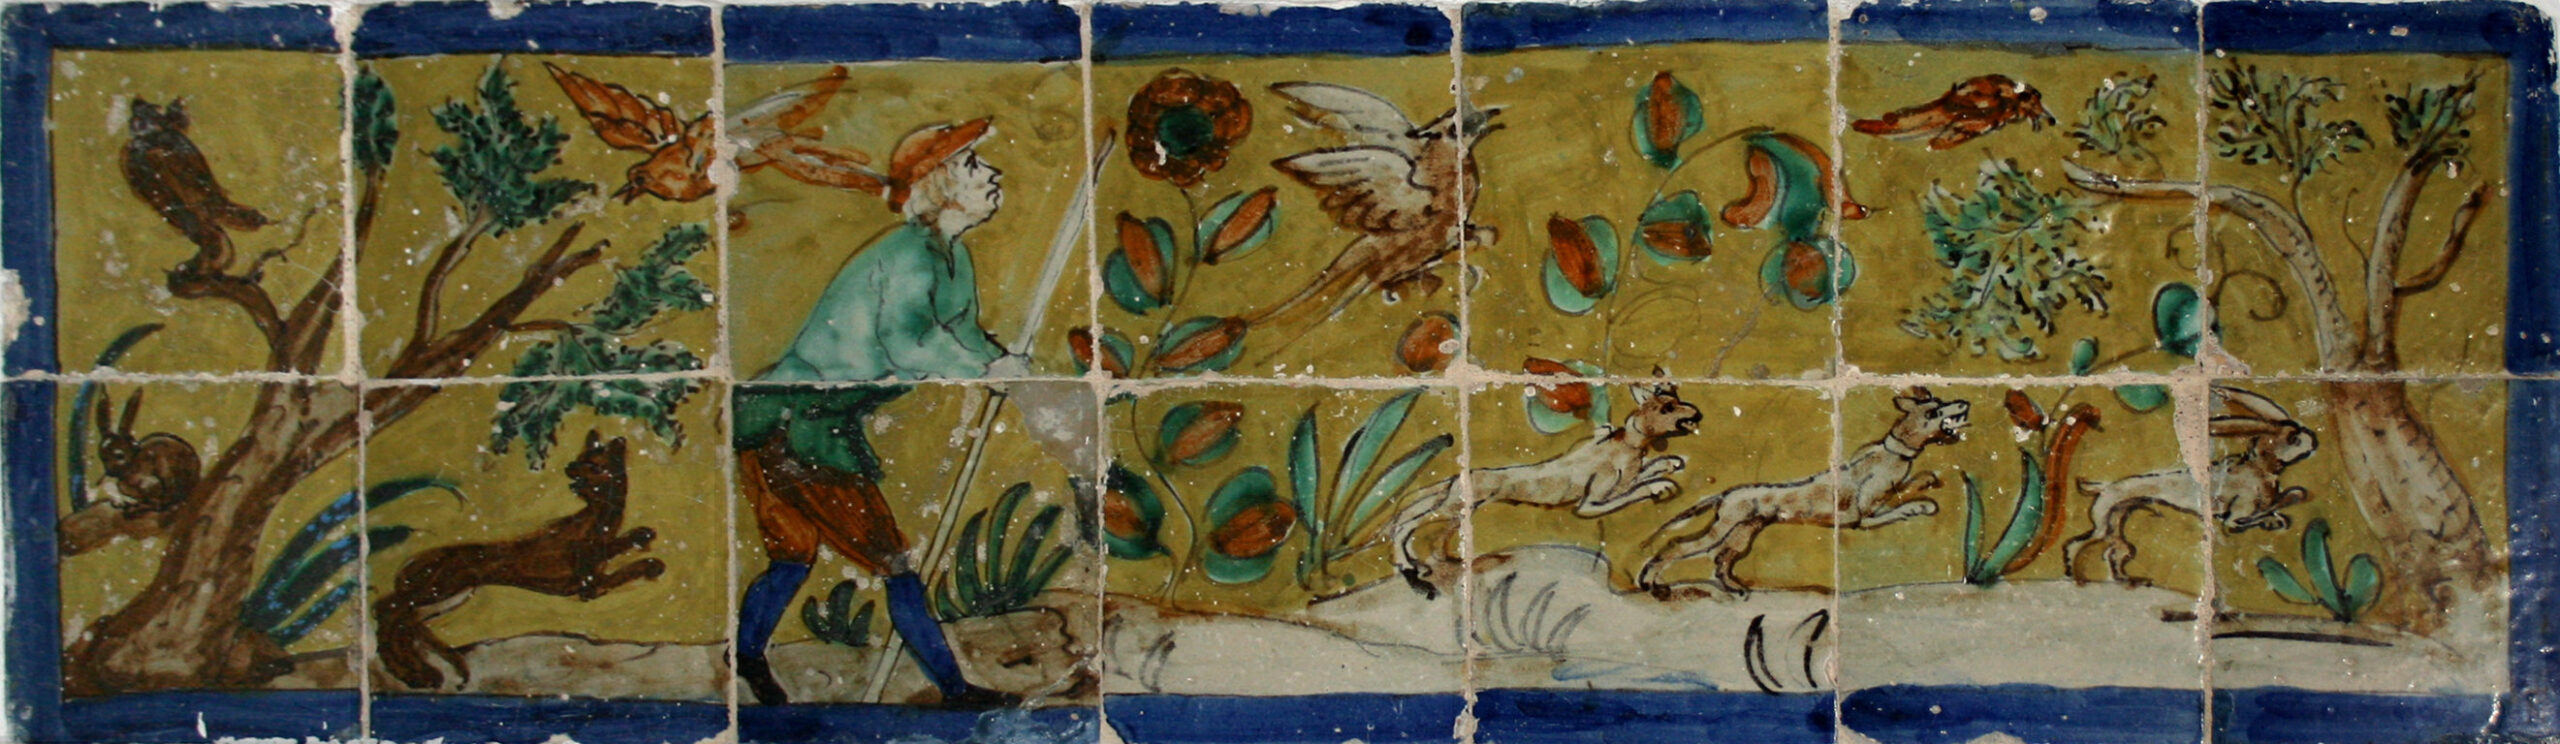 02628. Panel con escena de montería. Convento de Santa María de Jesús. Sevilla.